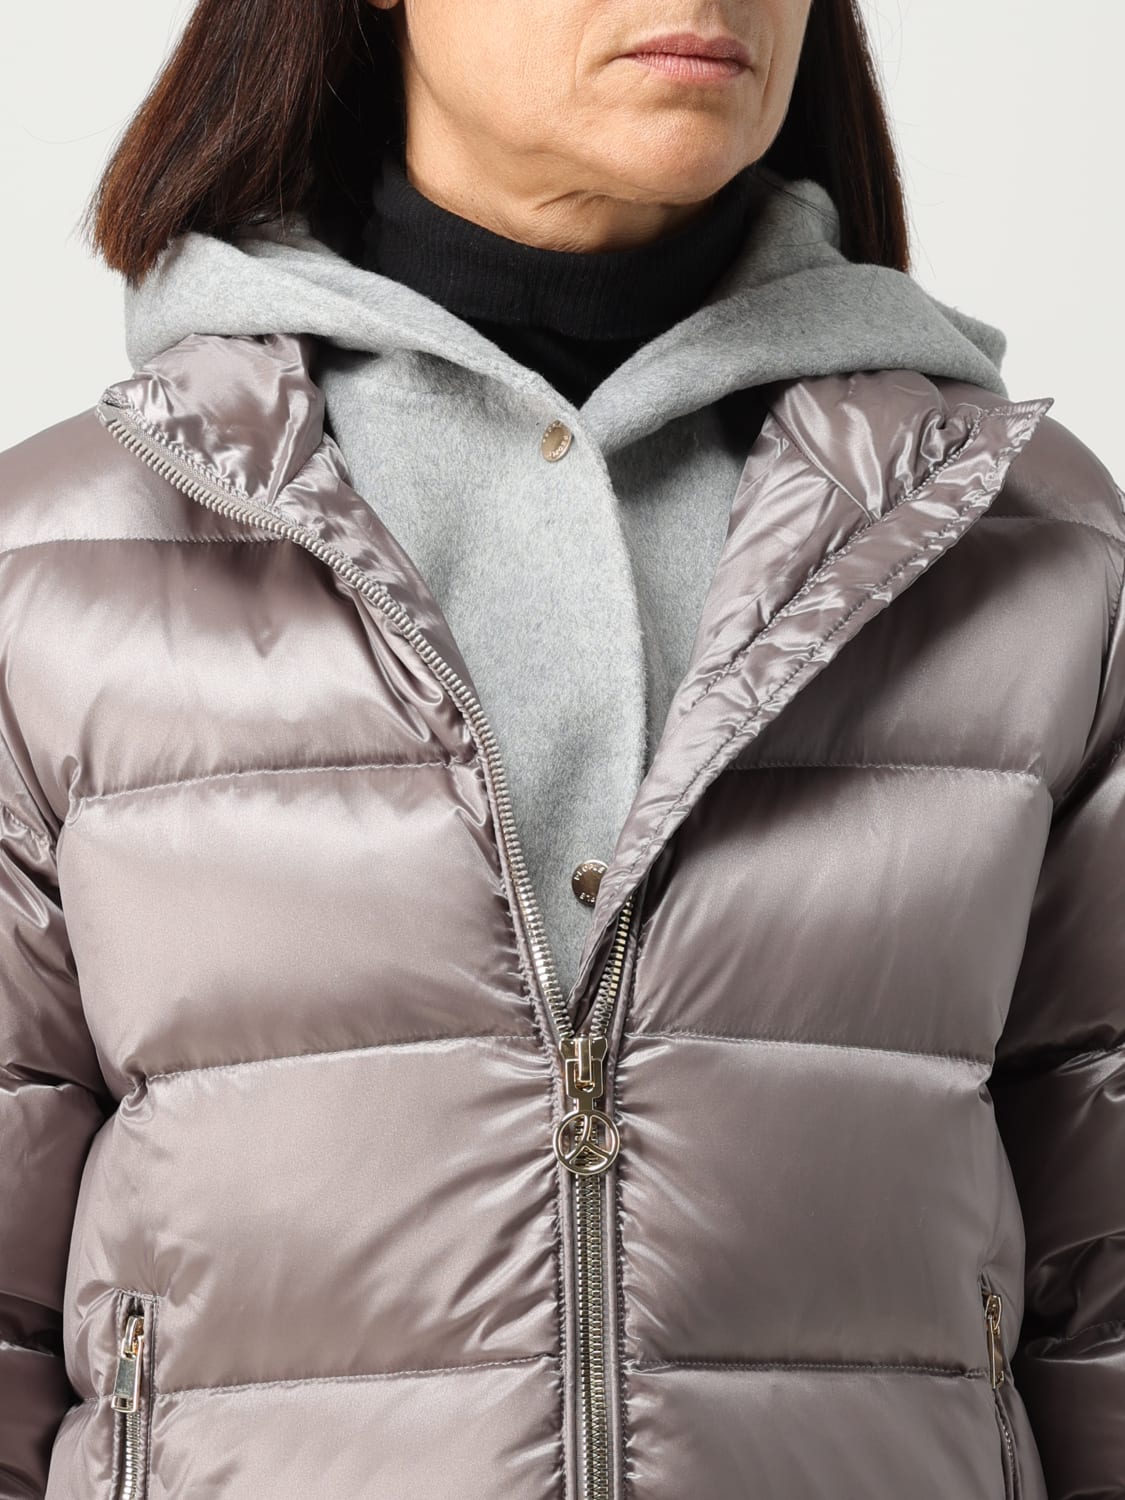 PEOPLE OF SHIBUYA: jacket for woman - Grey | People Of Shibuya jacket  USAGIPM839 online at